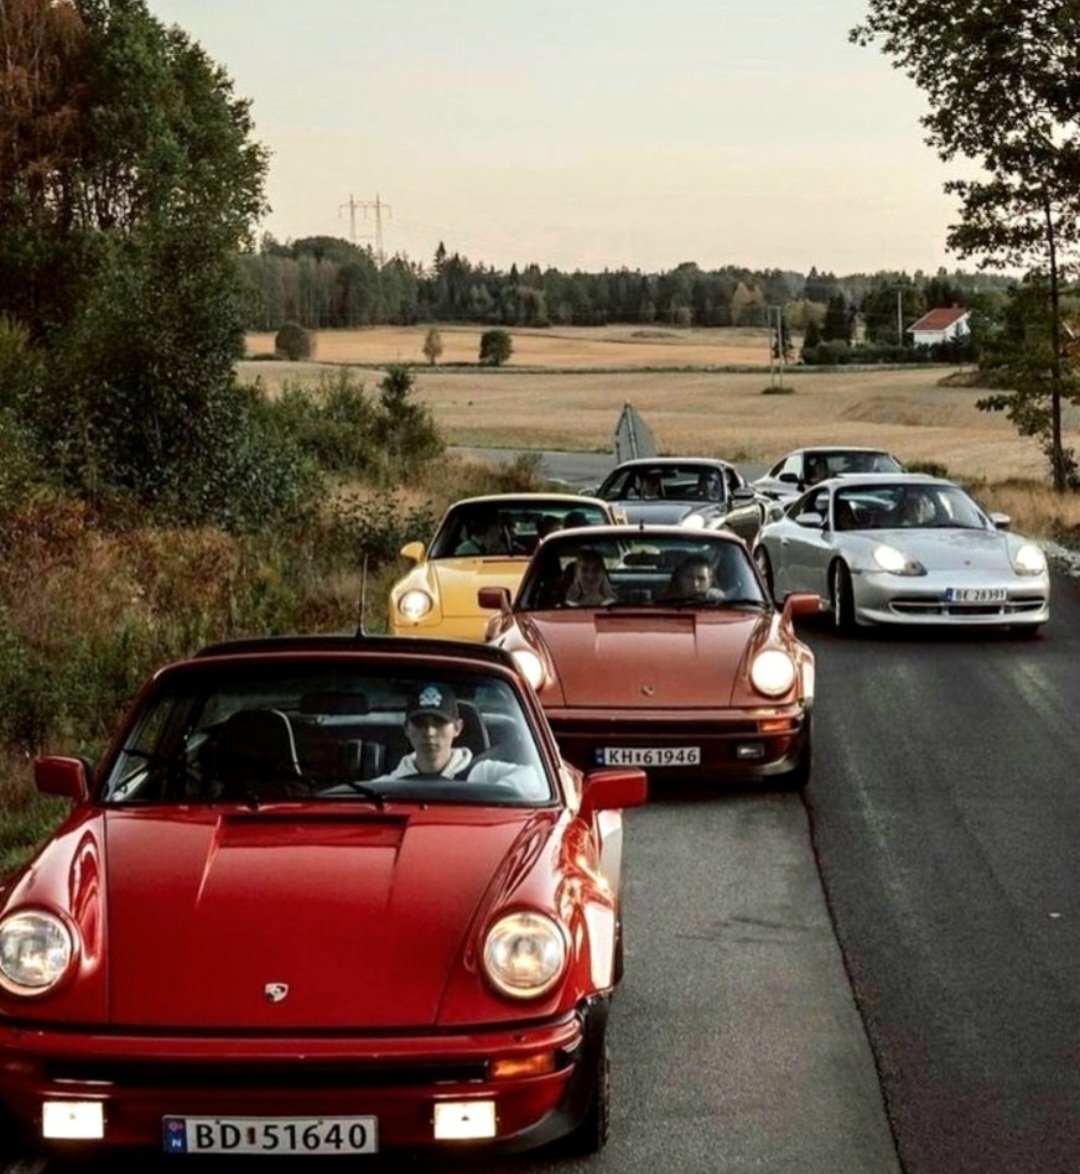 Friends with Porsches!  🤗